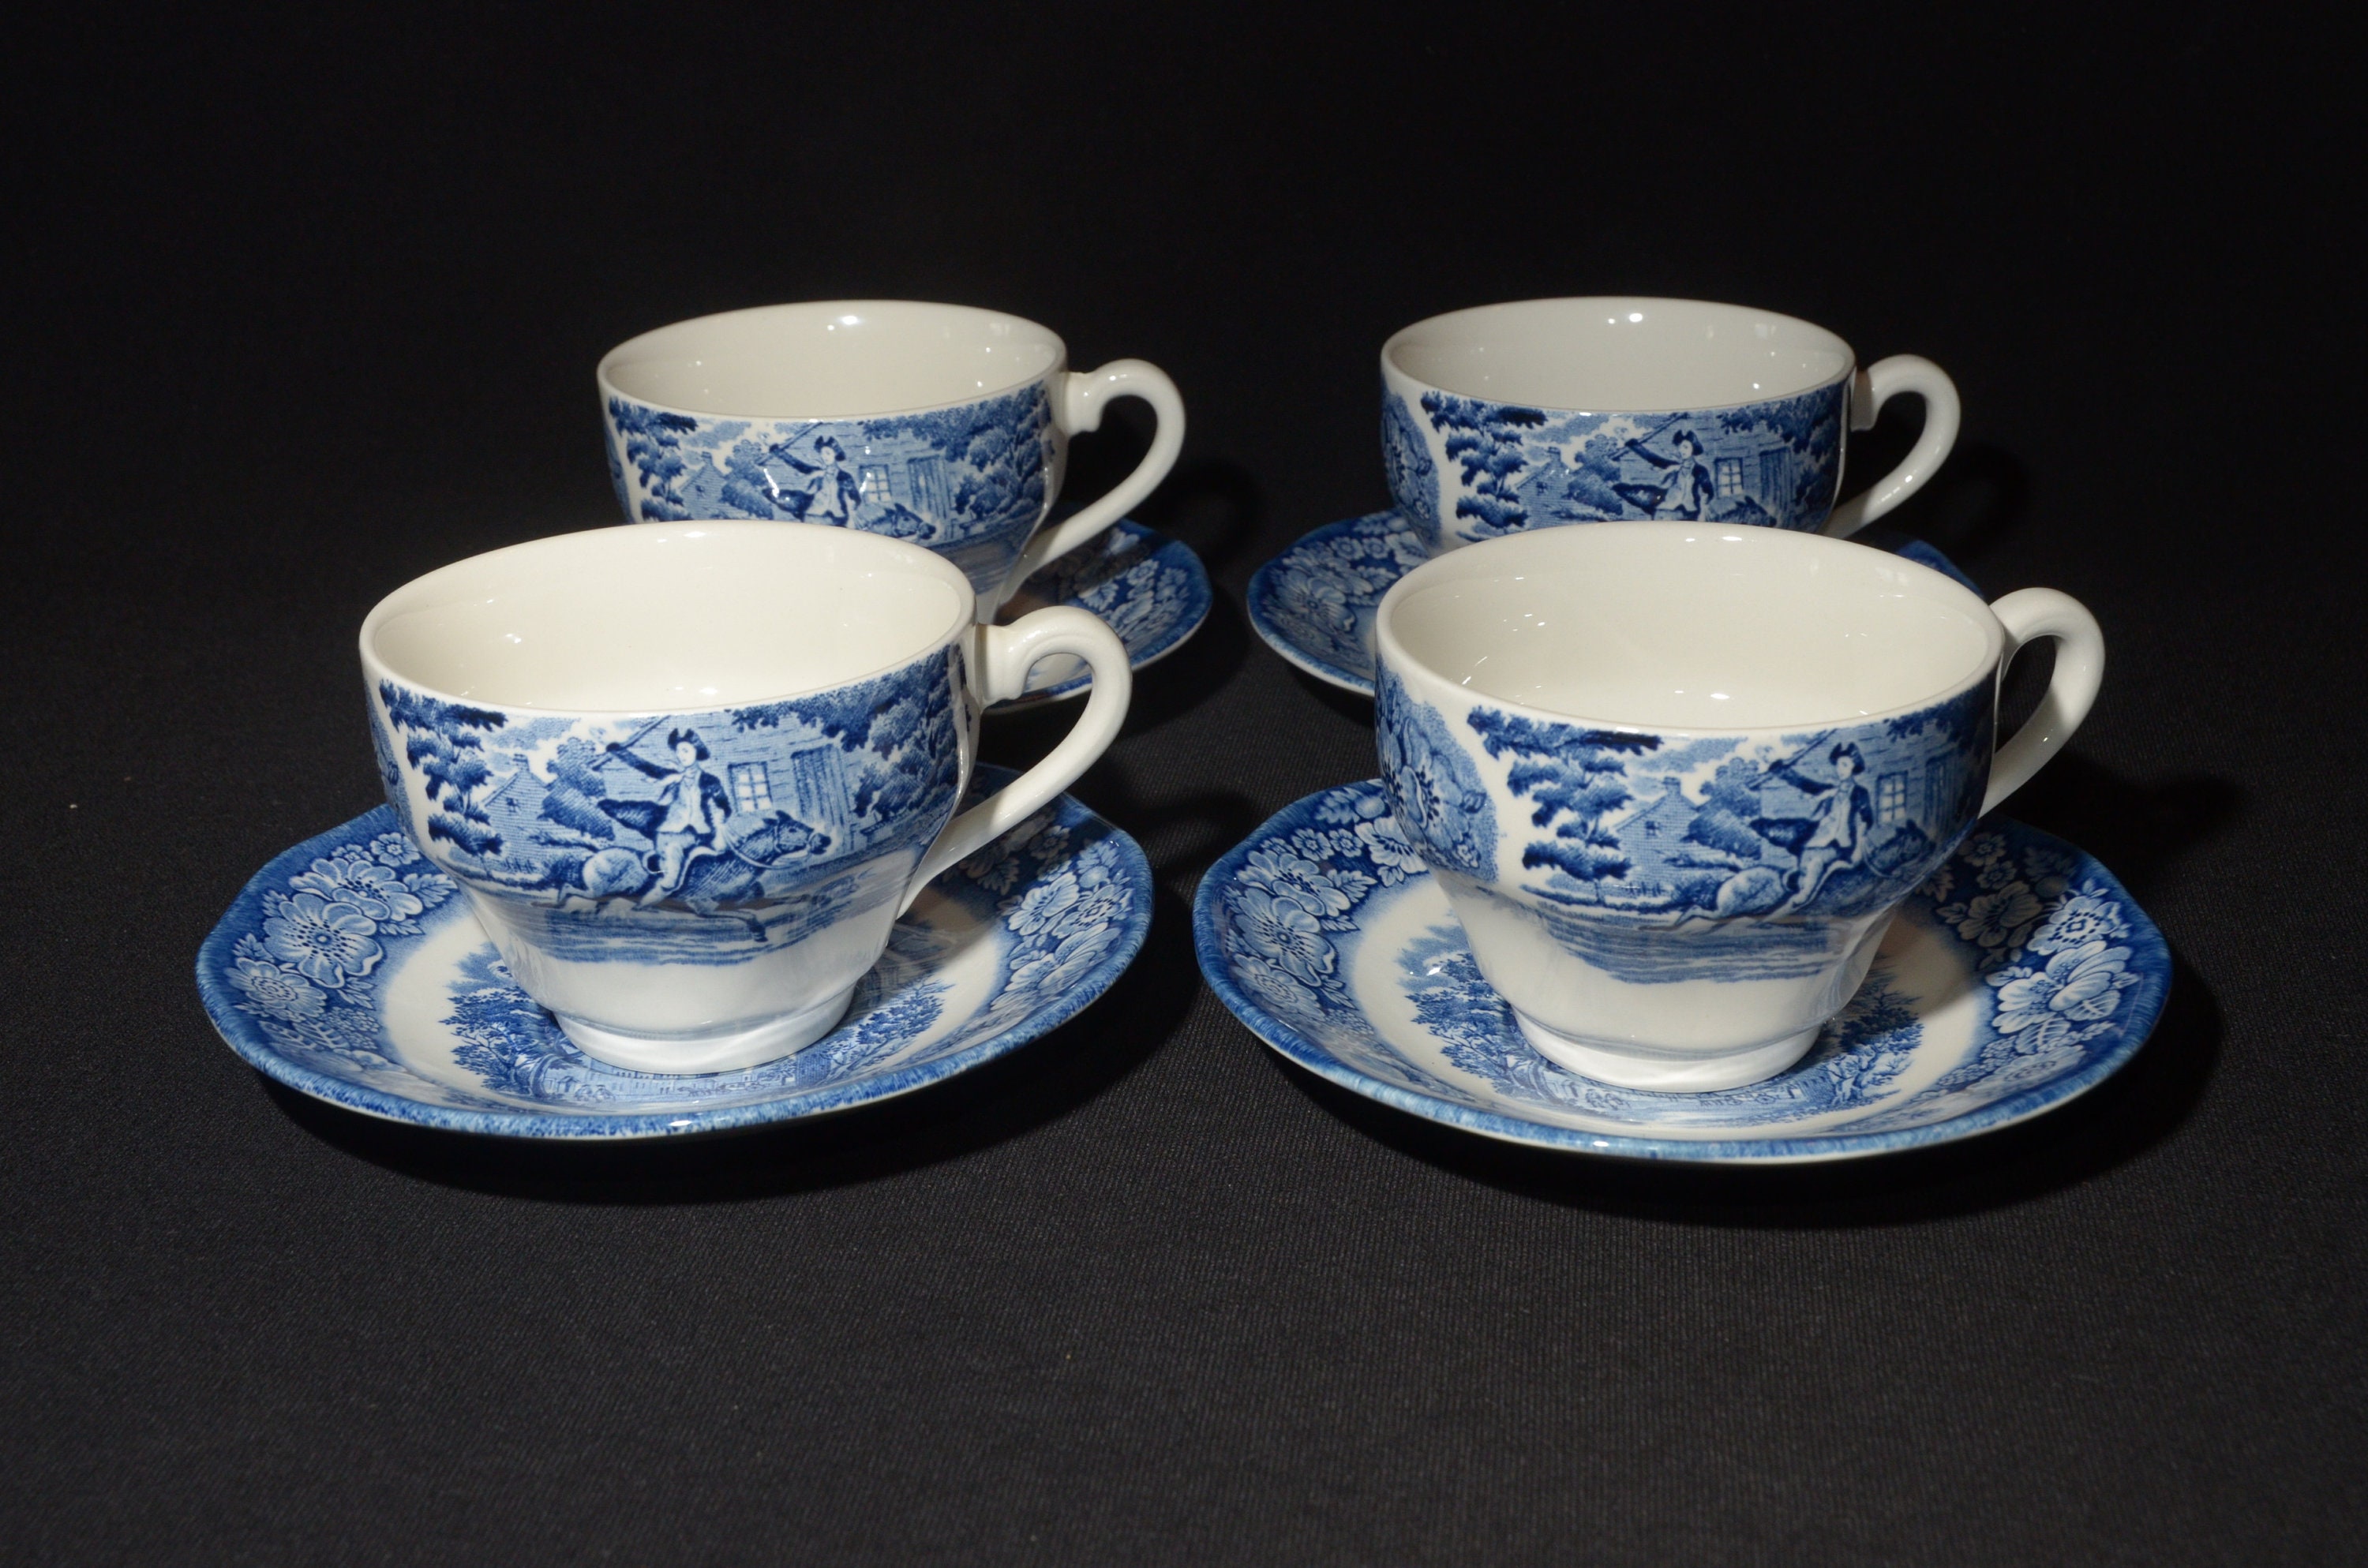 Las tazas de té inglés: curiosidades y tazas personalizadas